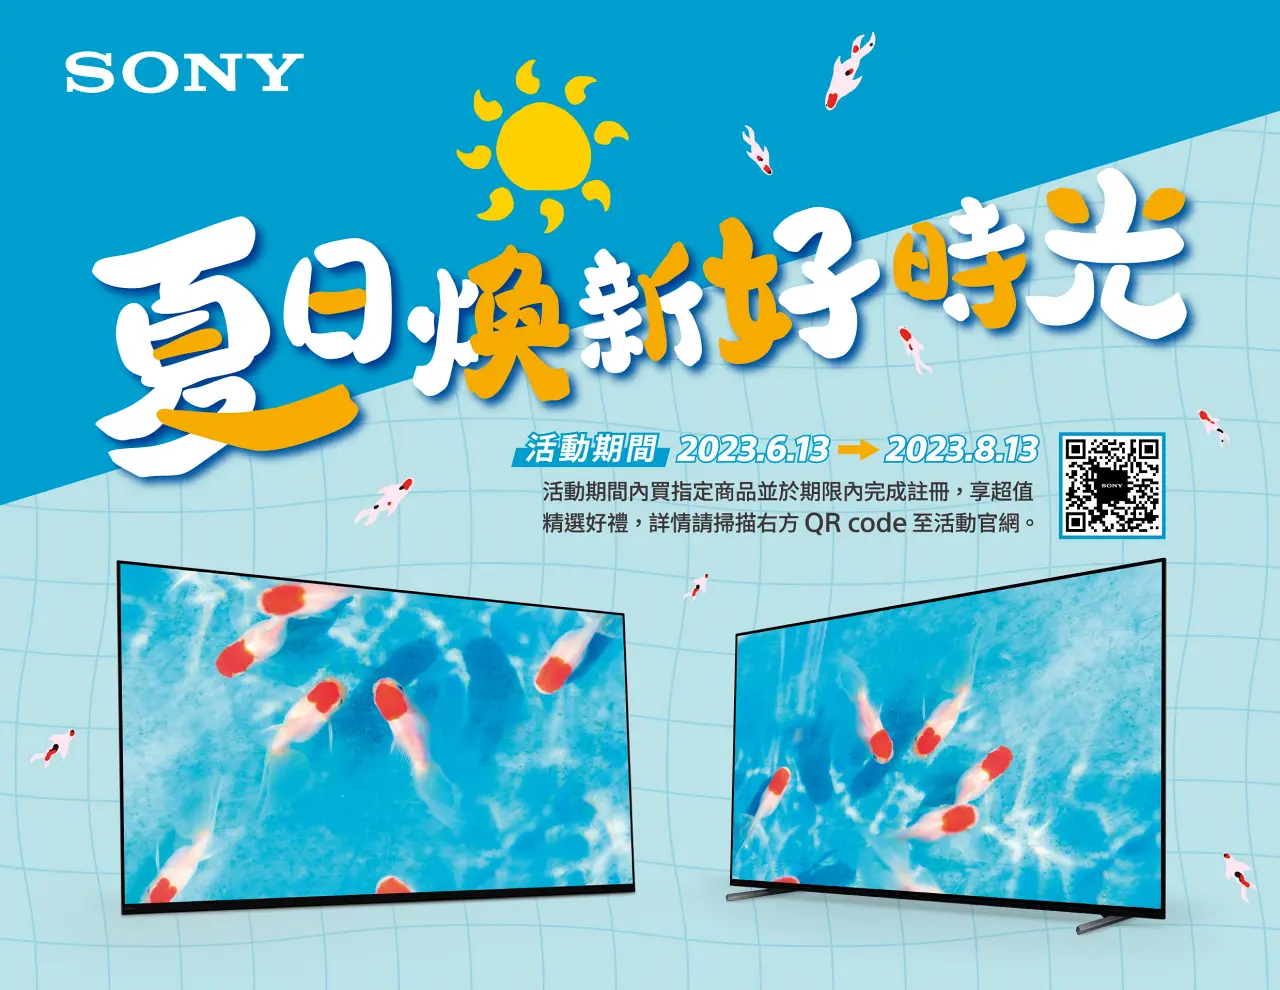 bdc8b4dbf10d49f6bf6feaf51552533b - Sony 推出夏季優惠活動、優惠好禮滿載暑意消，最高享價值 NT$13,990 超值好禮！